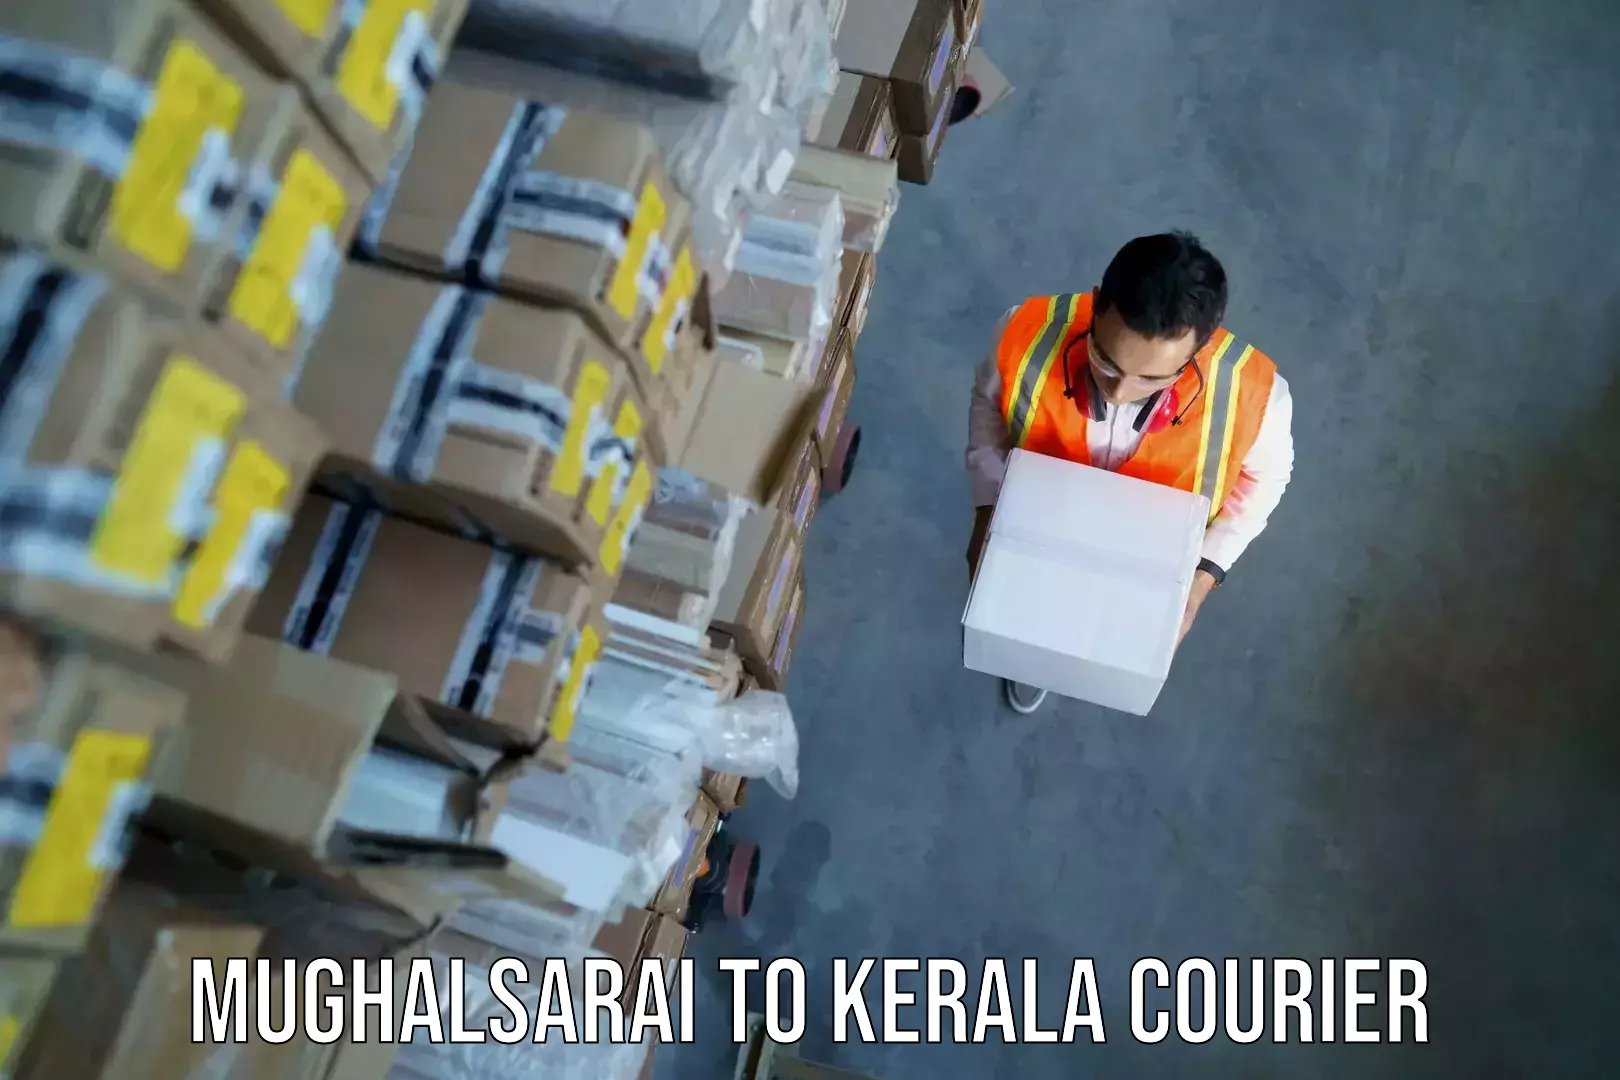 Baggage shipping experts Mughalsarai to Parappa